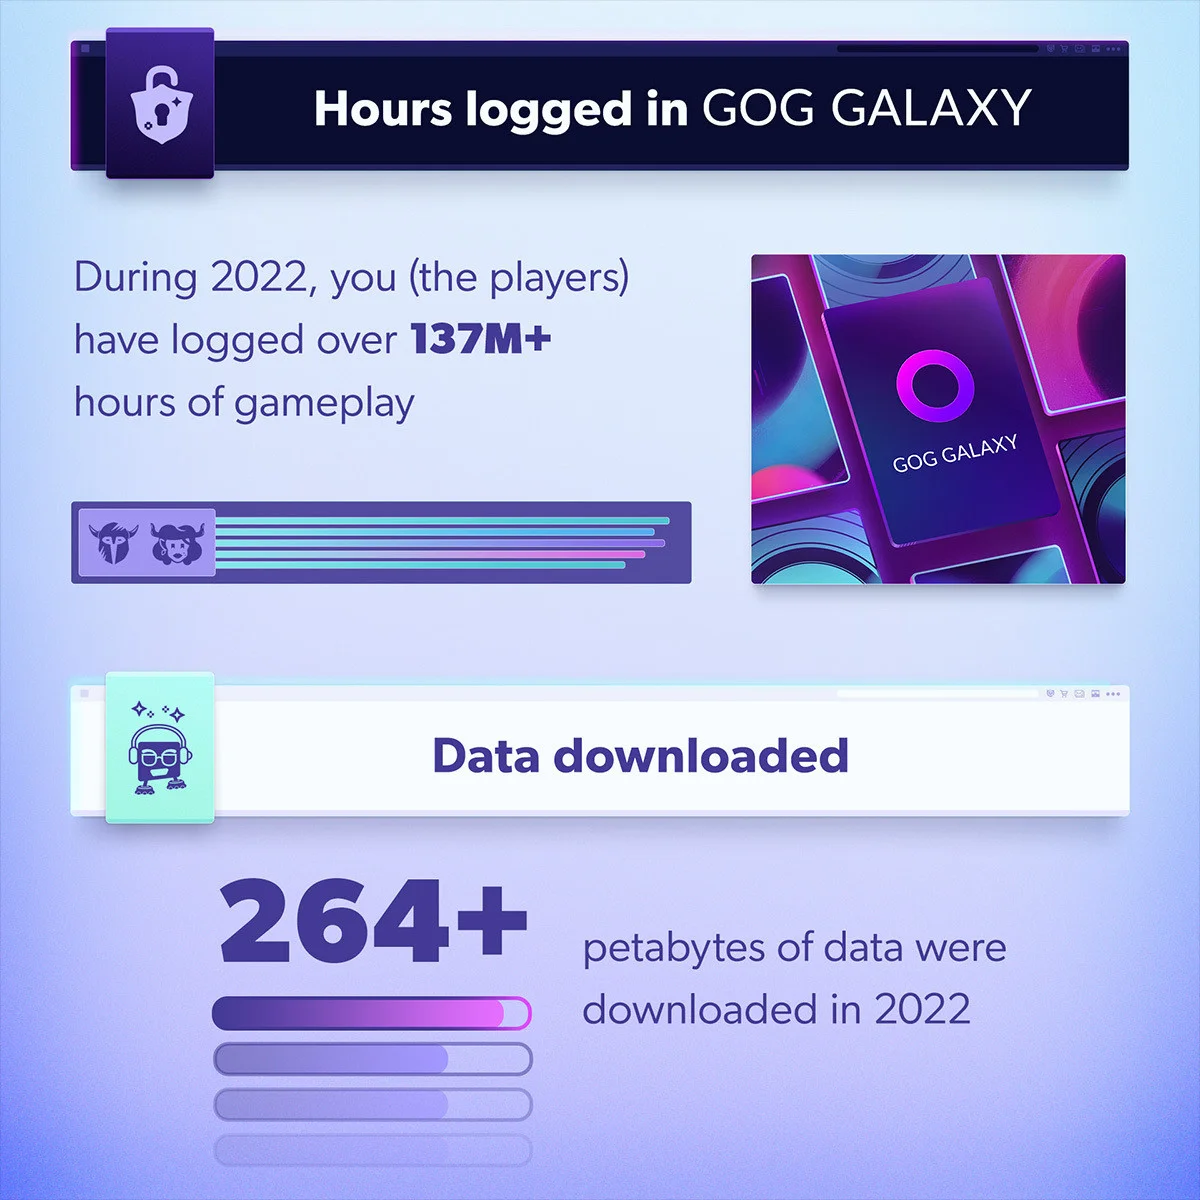 Пользователи GOG провели в играх более 137 миллионов часов за 2022 год - фото 2